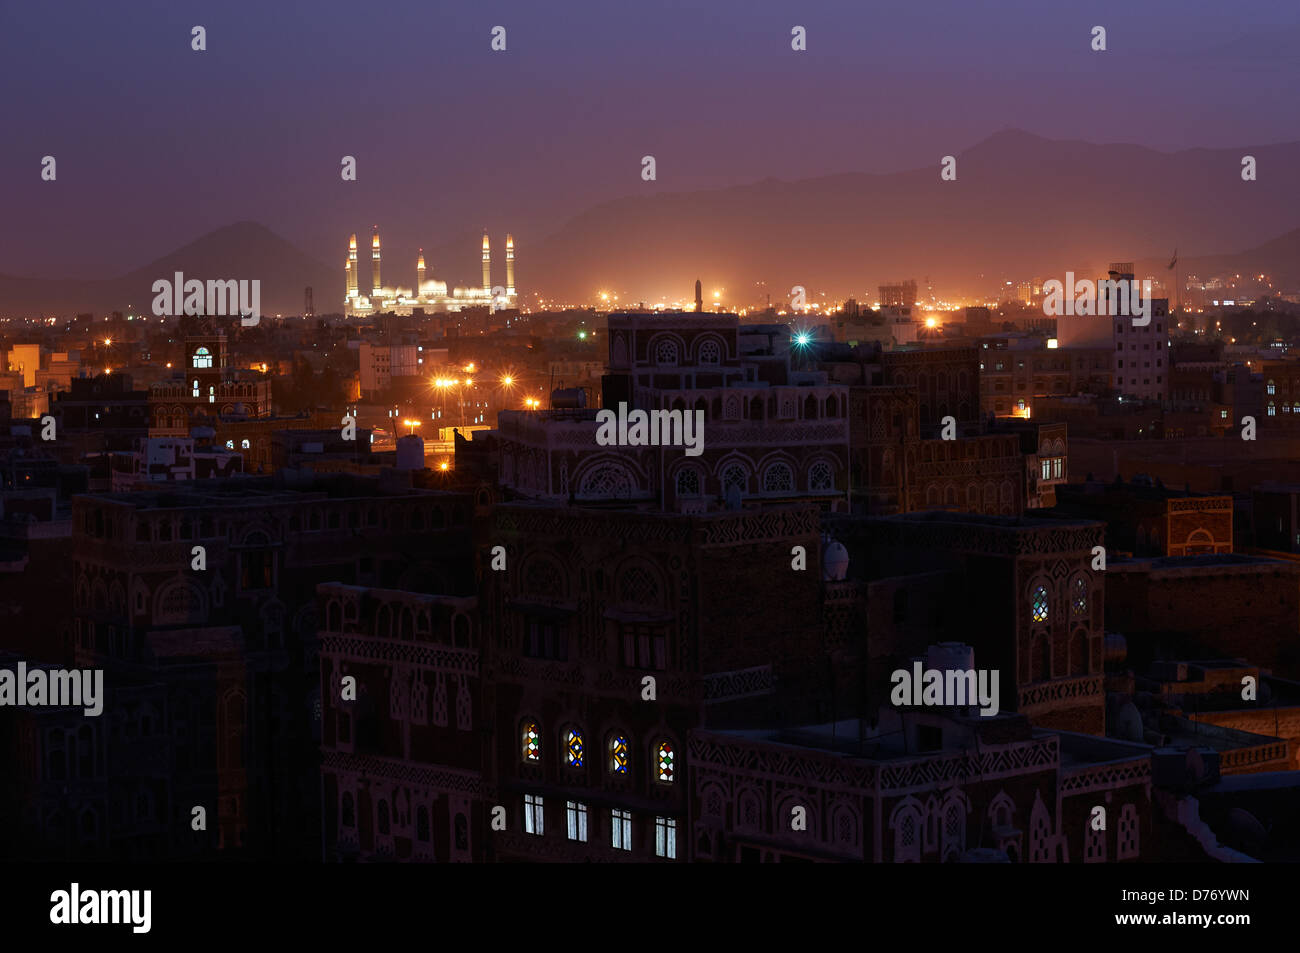 Night cityscape at the capital of Yemen, Sana'a Stock Photo